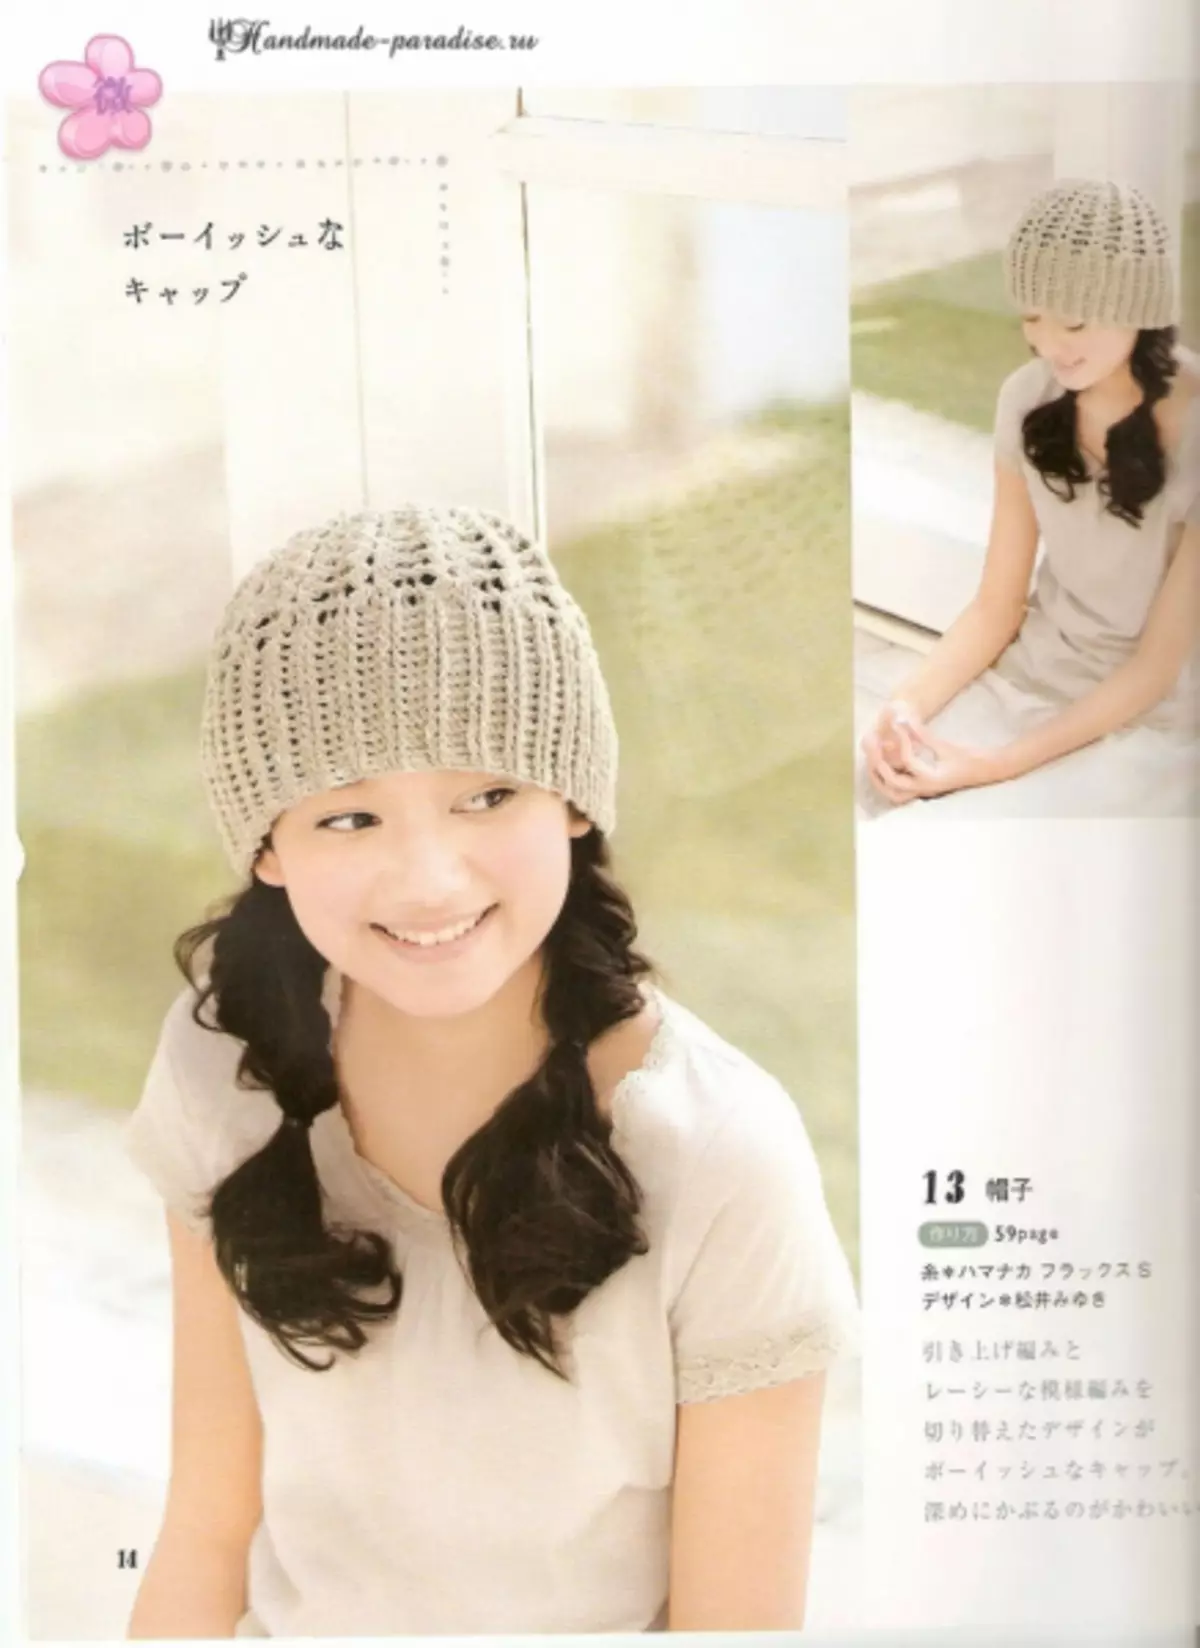 Crochet Summer Accessoiren. Japanesch Magazin mat Schemaen